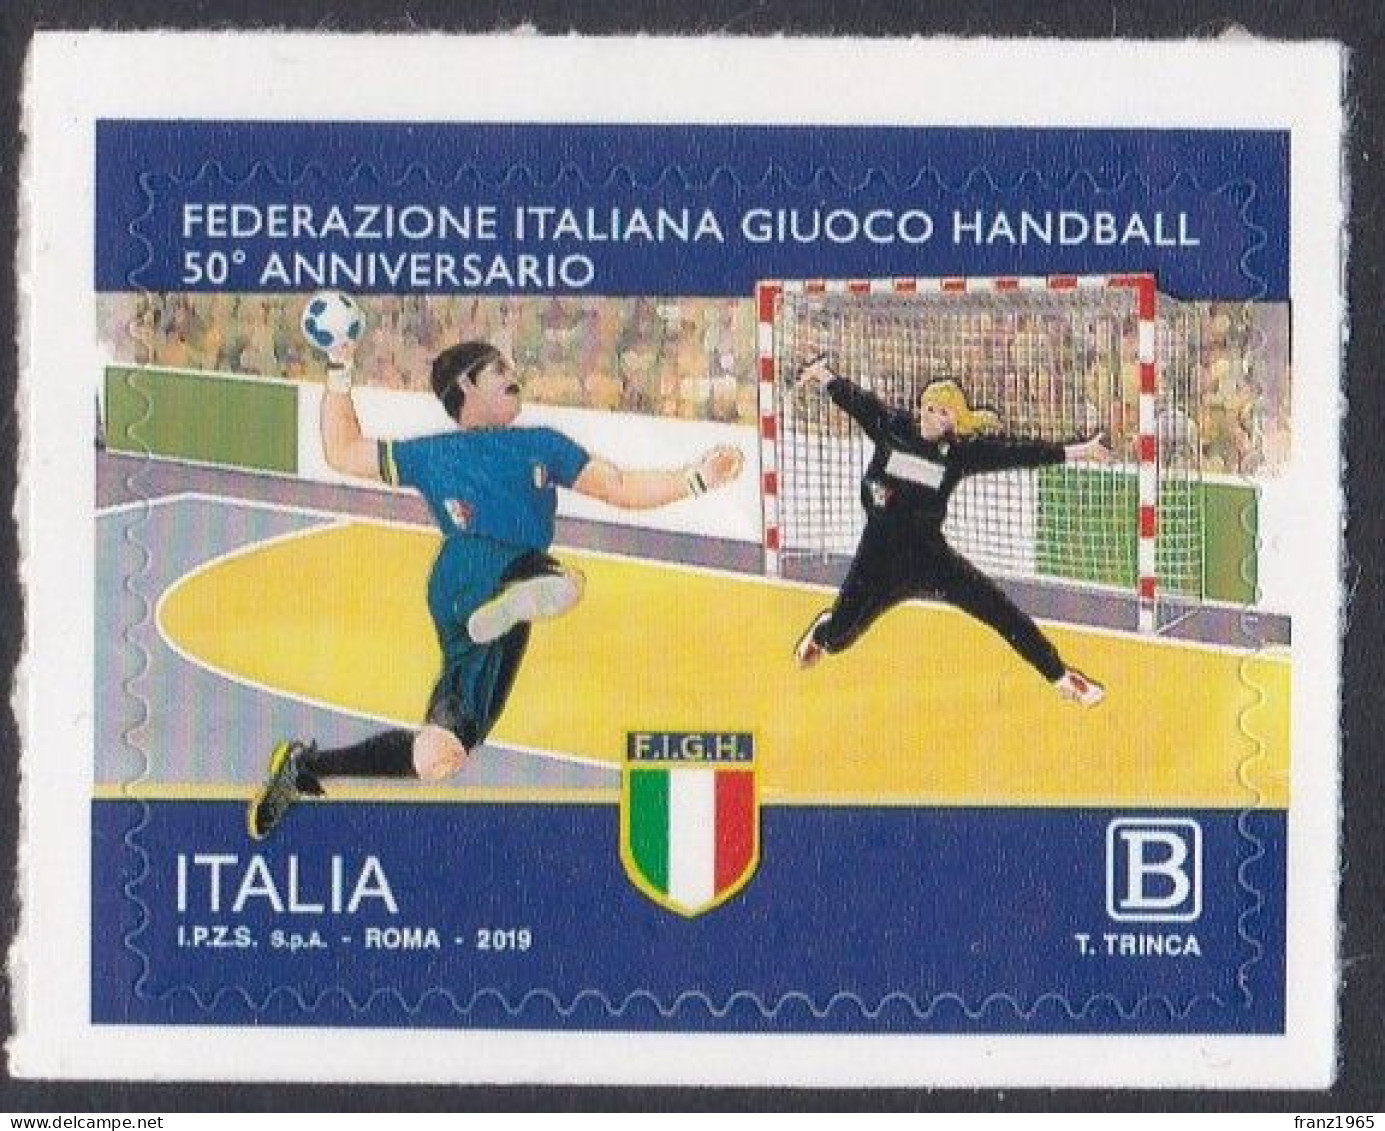 Italian Handball Federation - 2019 - Handball